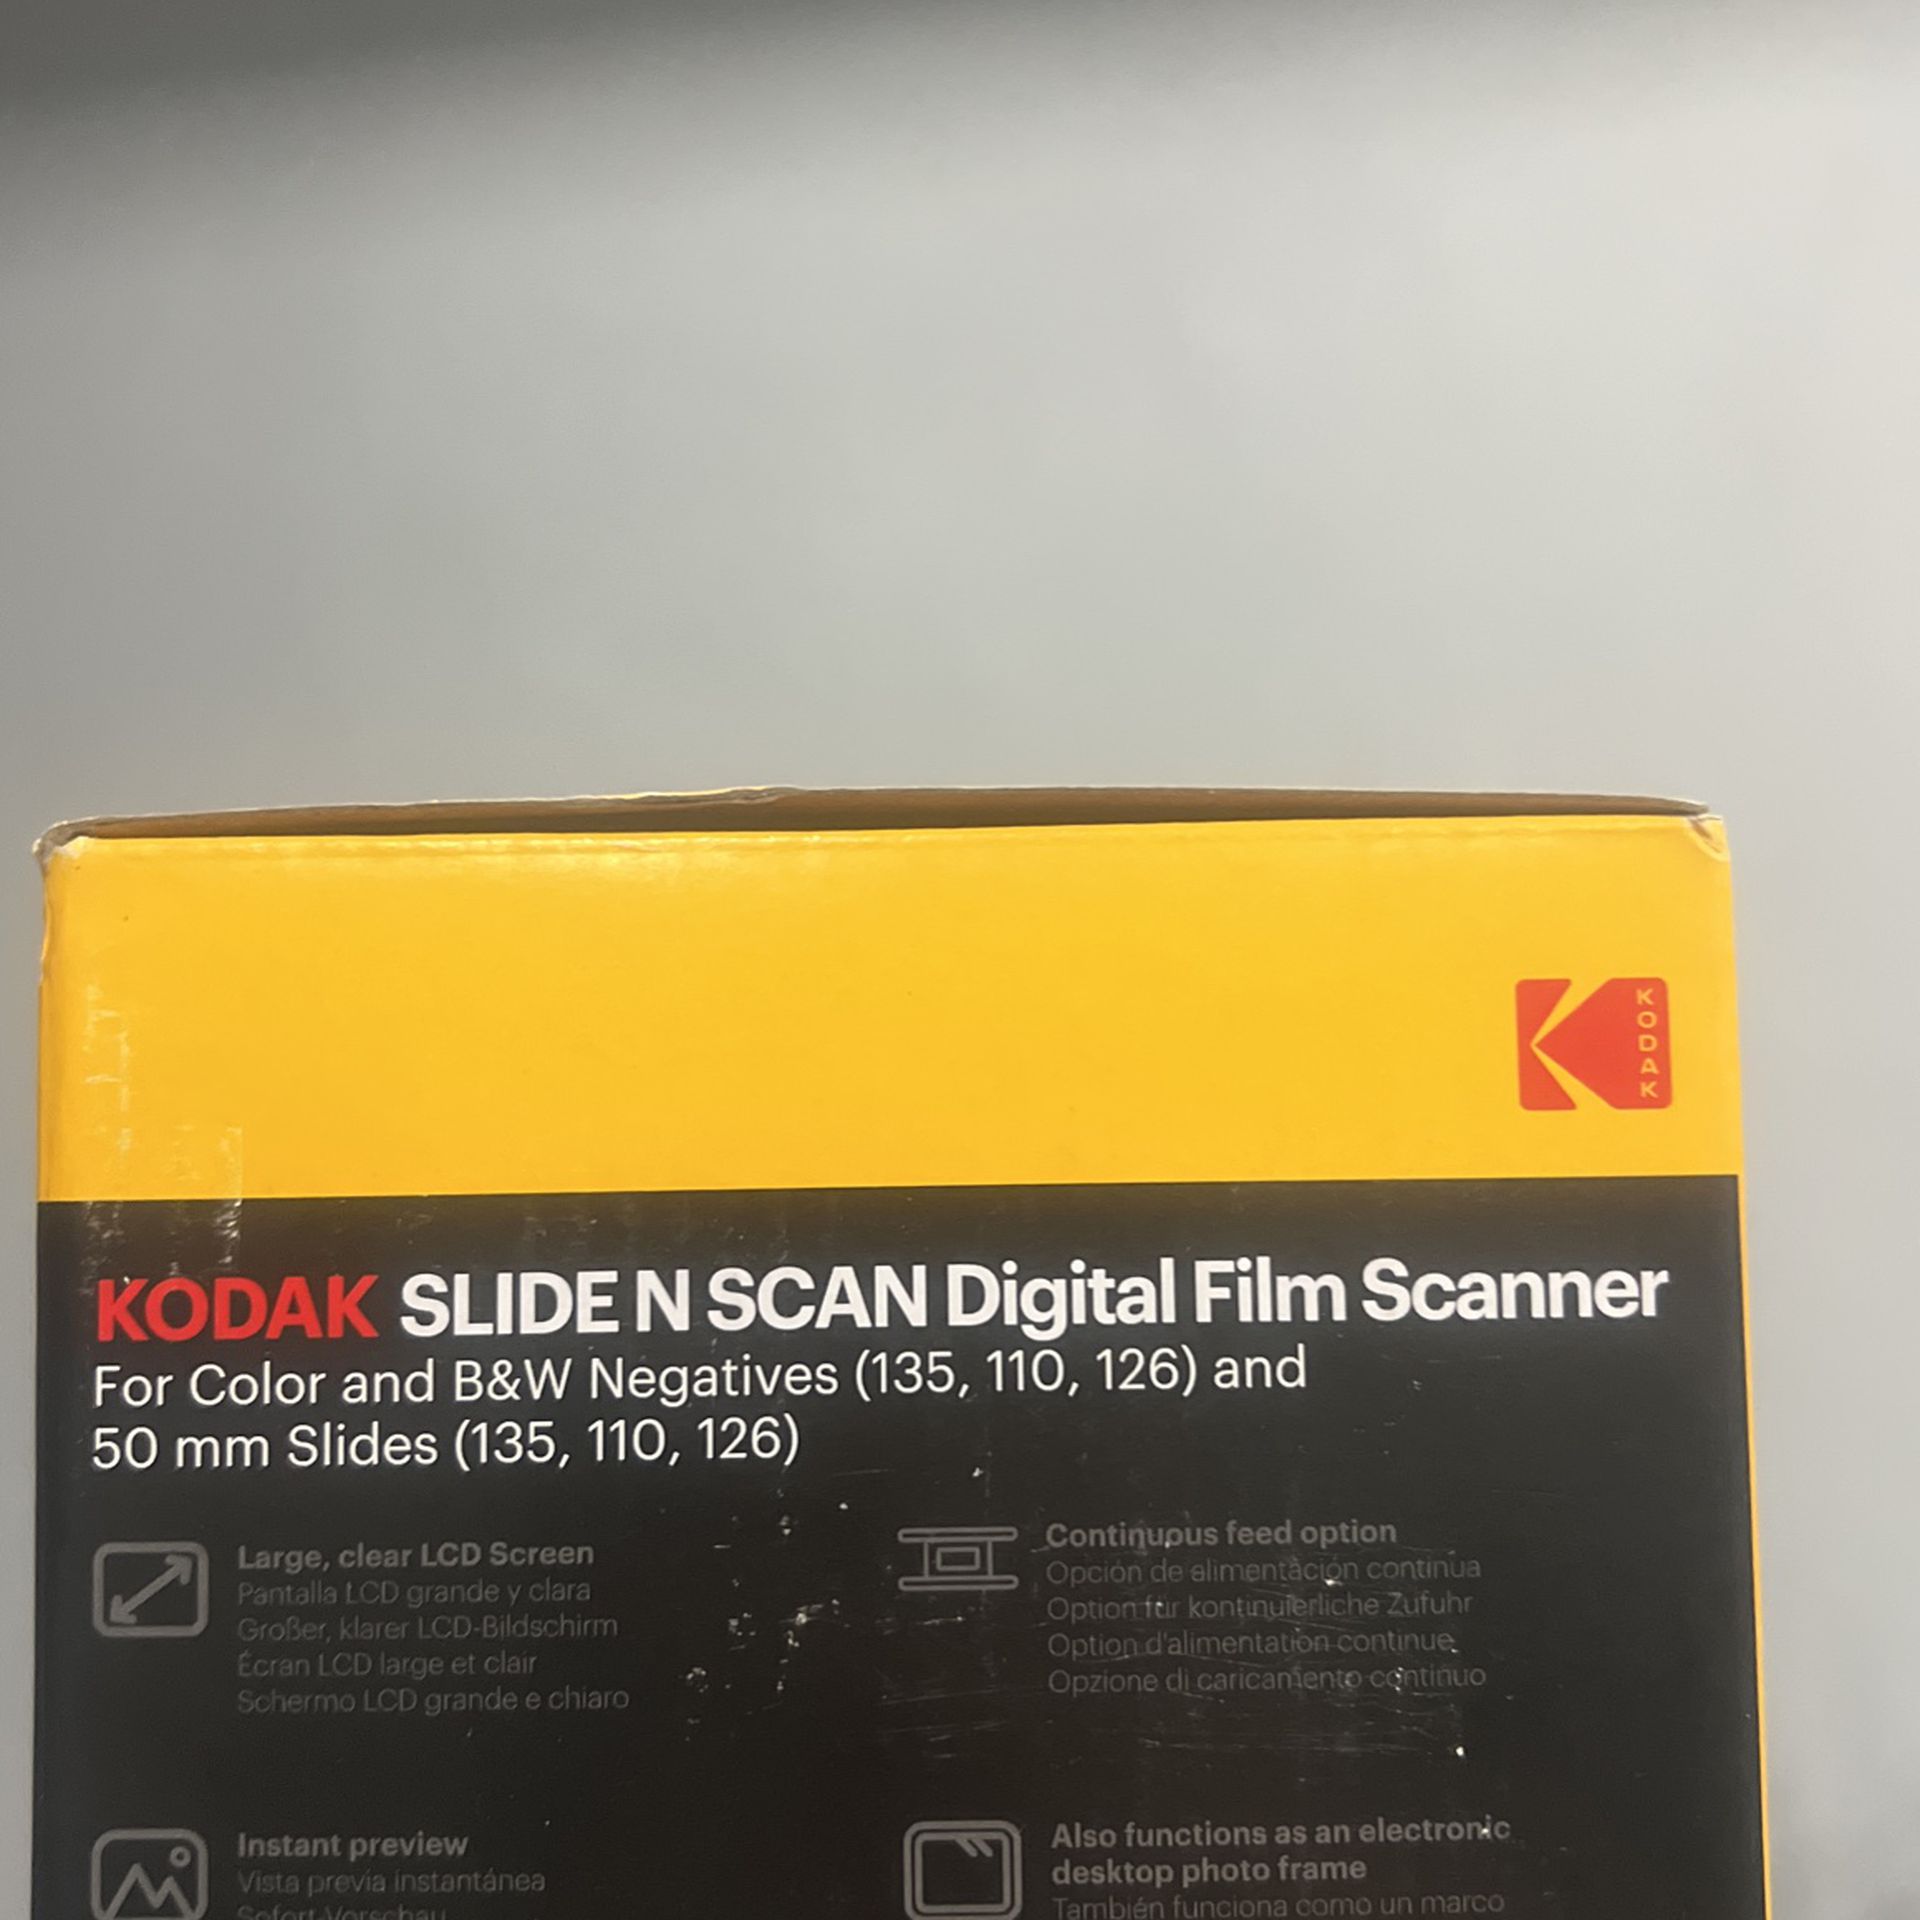 Kodak Slide N Scan Digital Film Scanner for Sale in Playa Del Rey, CA -  OfferUp